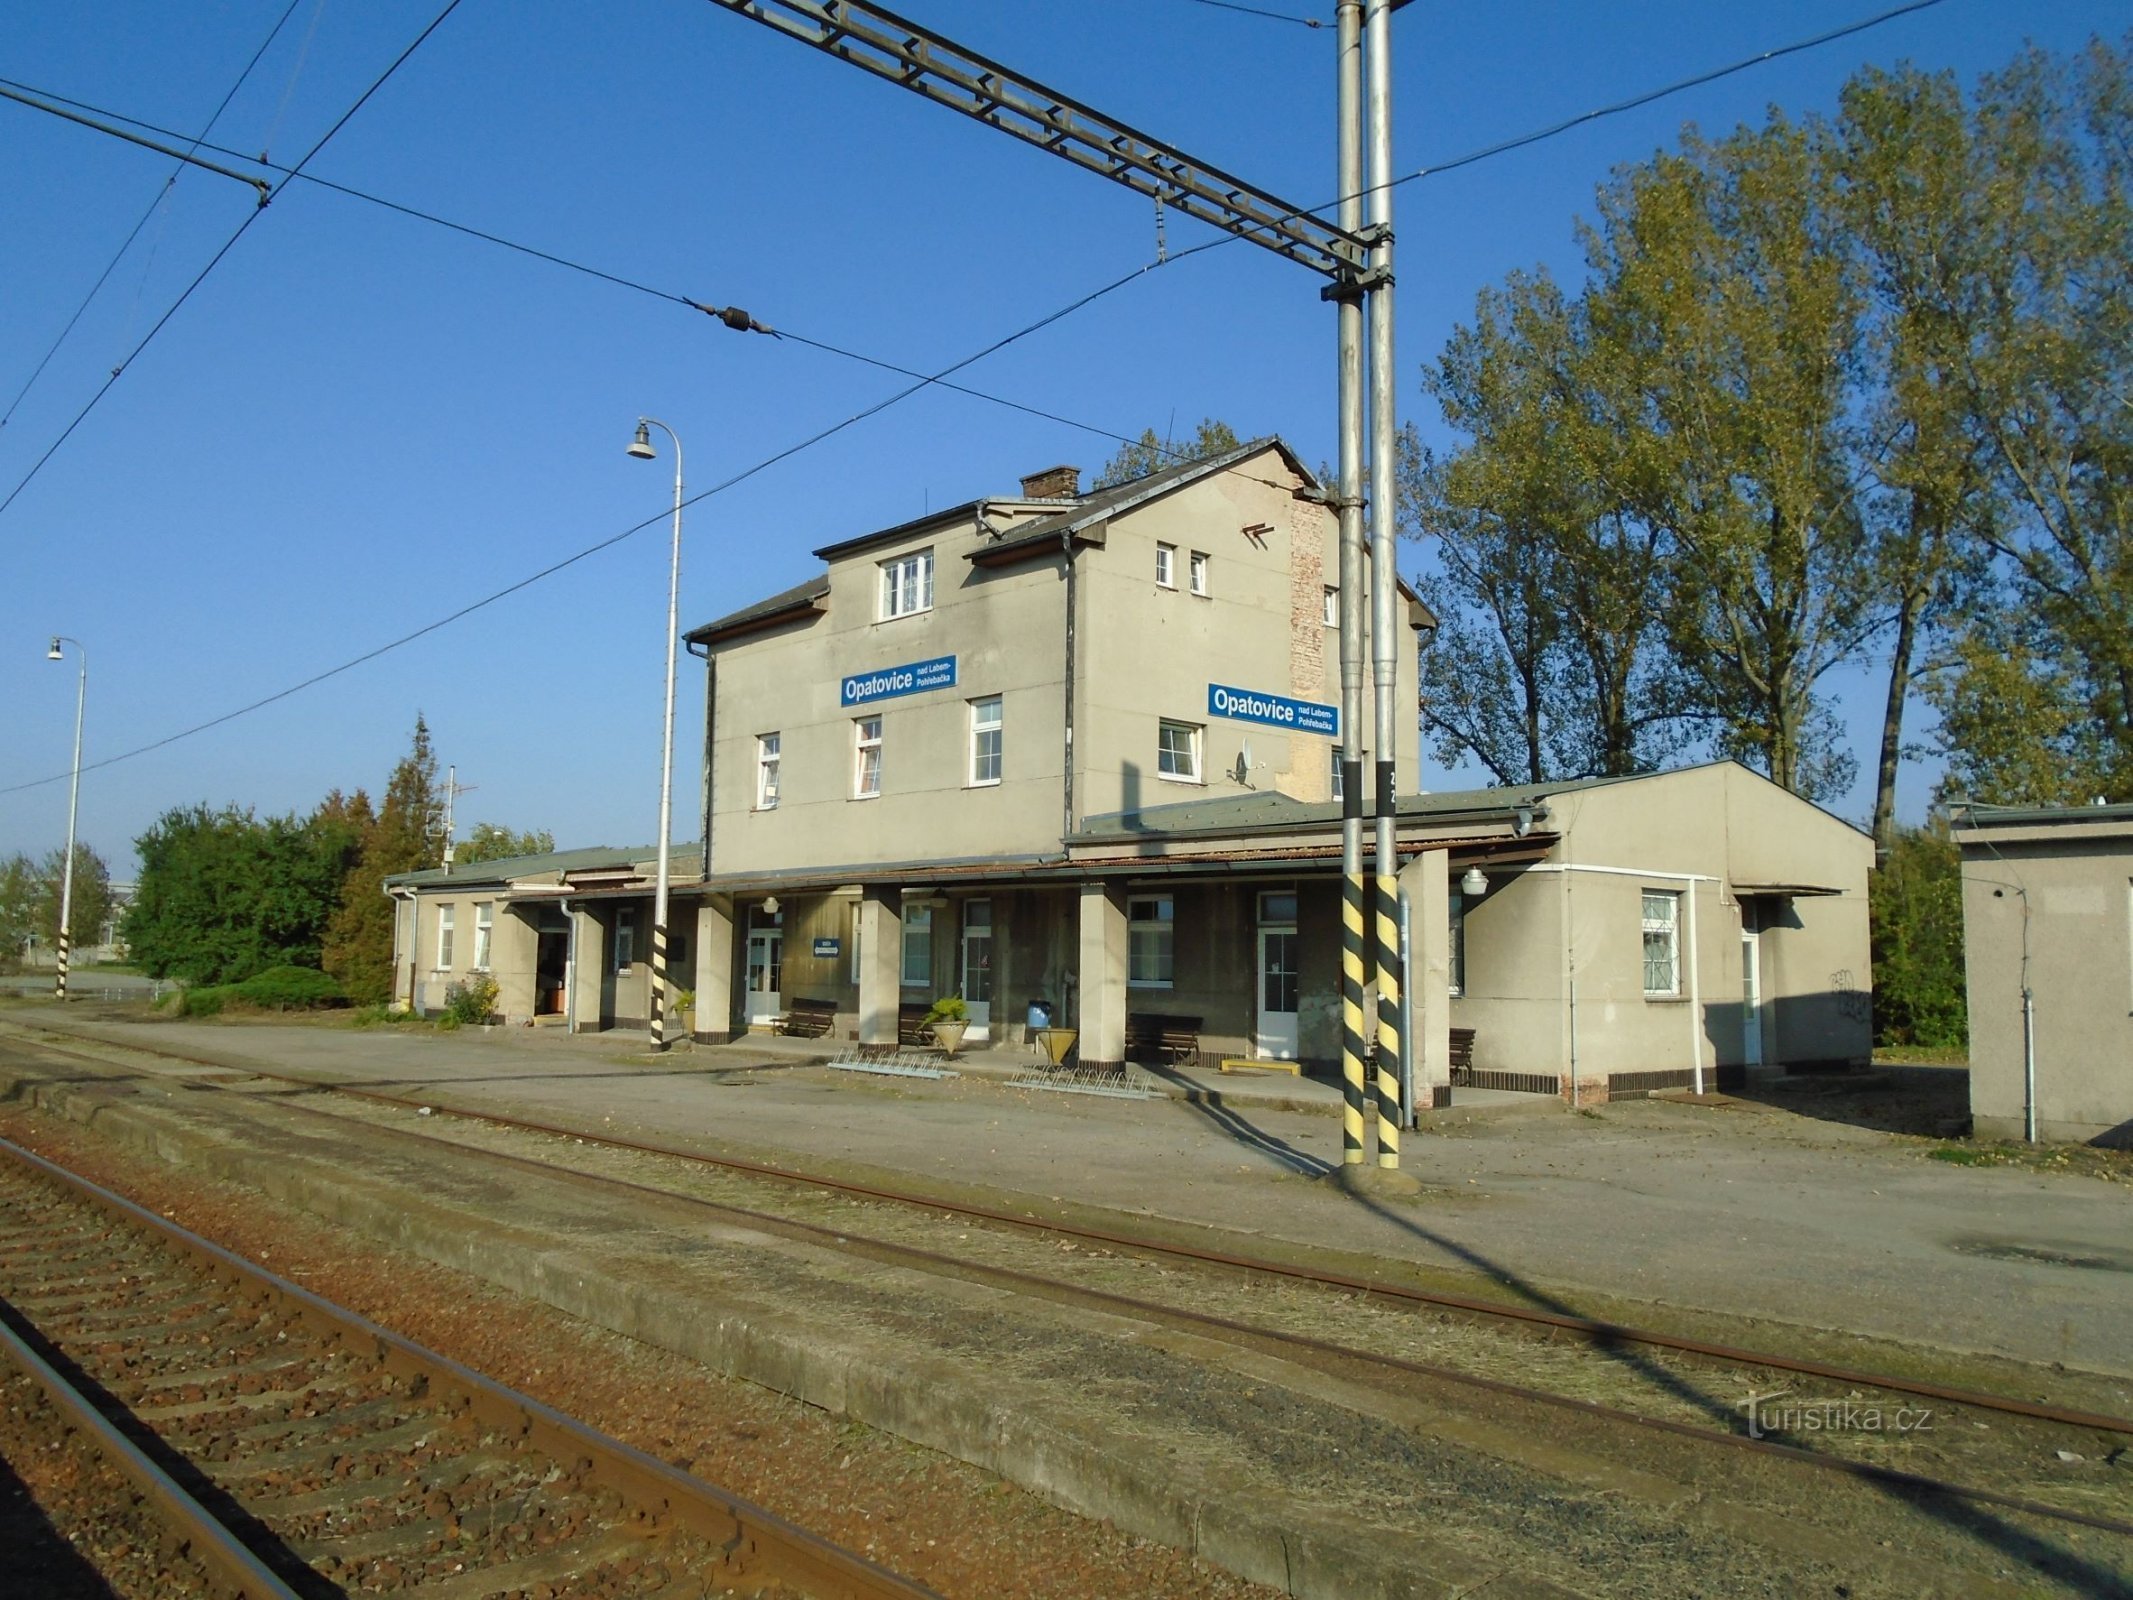 Estación de tren de Opatovice nad Labem-Pohřebačka (30.9.2017 de septiembre de XNUMX)